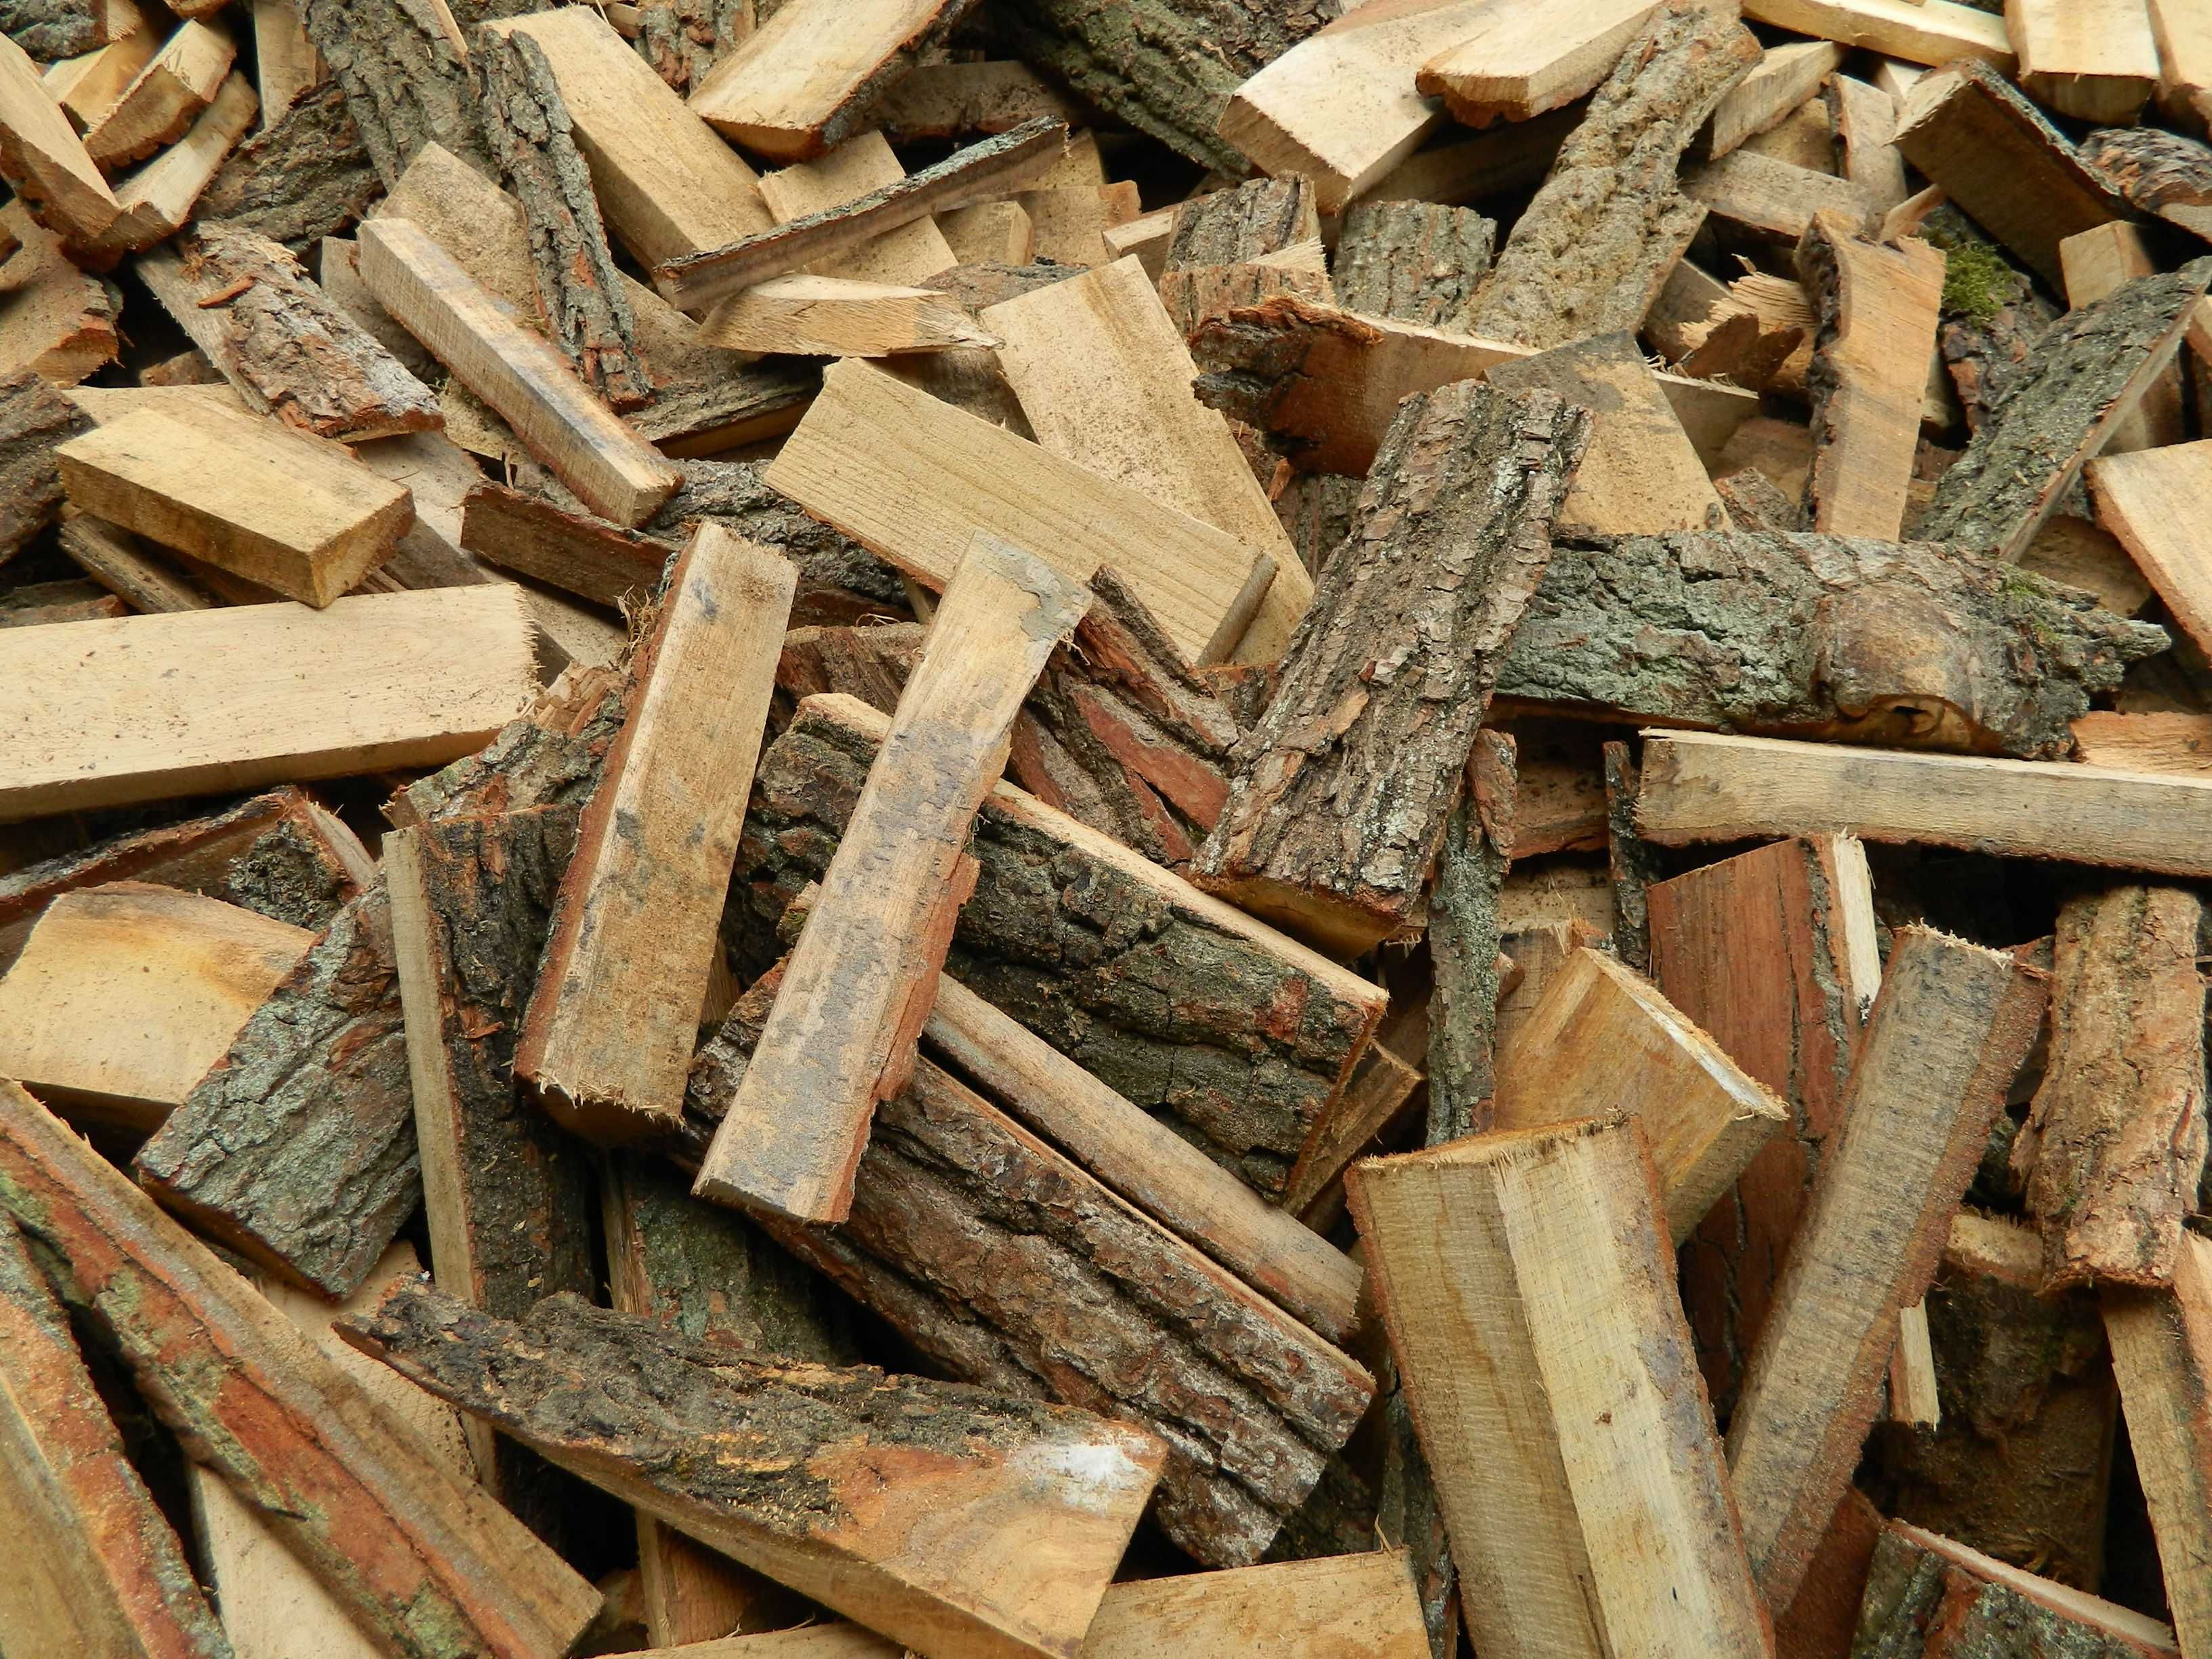 Opał - pocięta zrzyna dębowa drewno rozpałka węgiel pellet brykiet